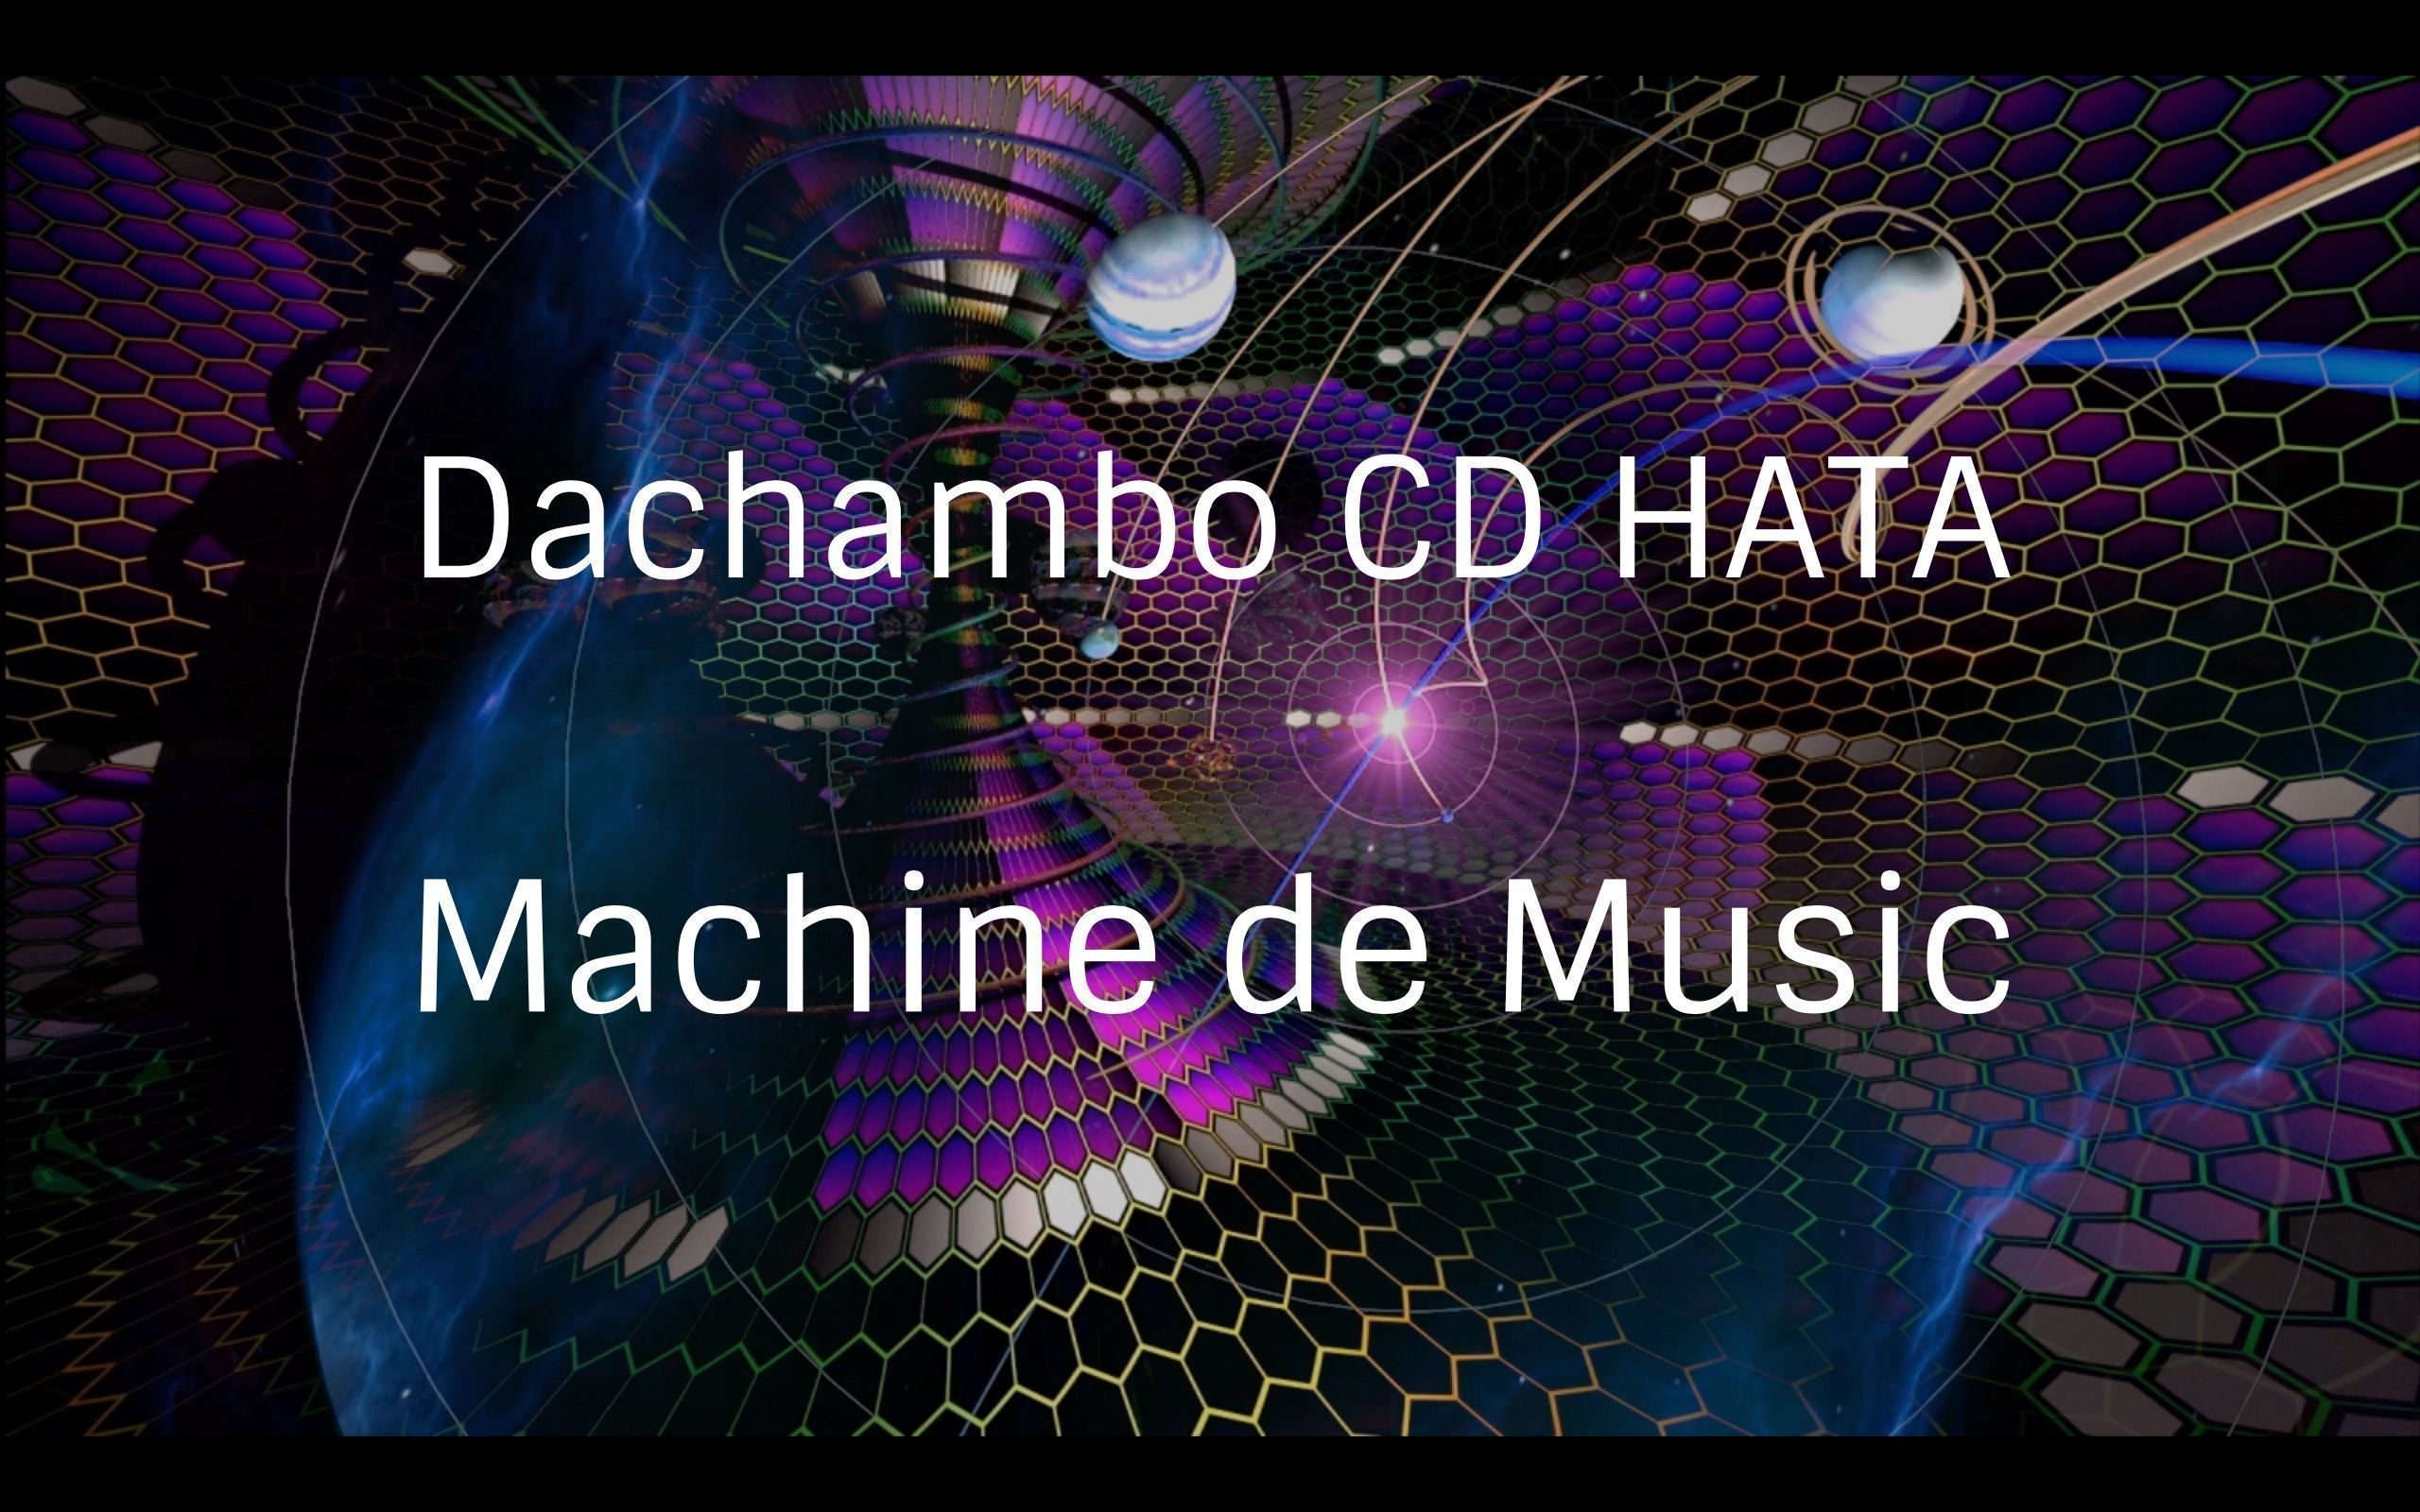 Dachambo CD HATAのMachine de Music コラムVol.49 
KORGショールームとデモンストレーション